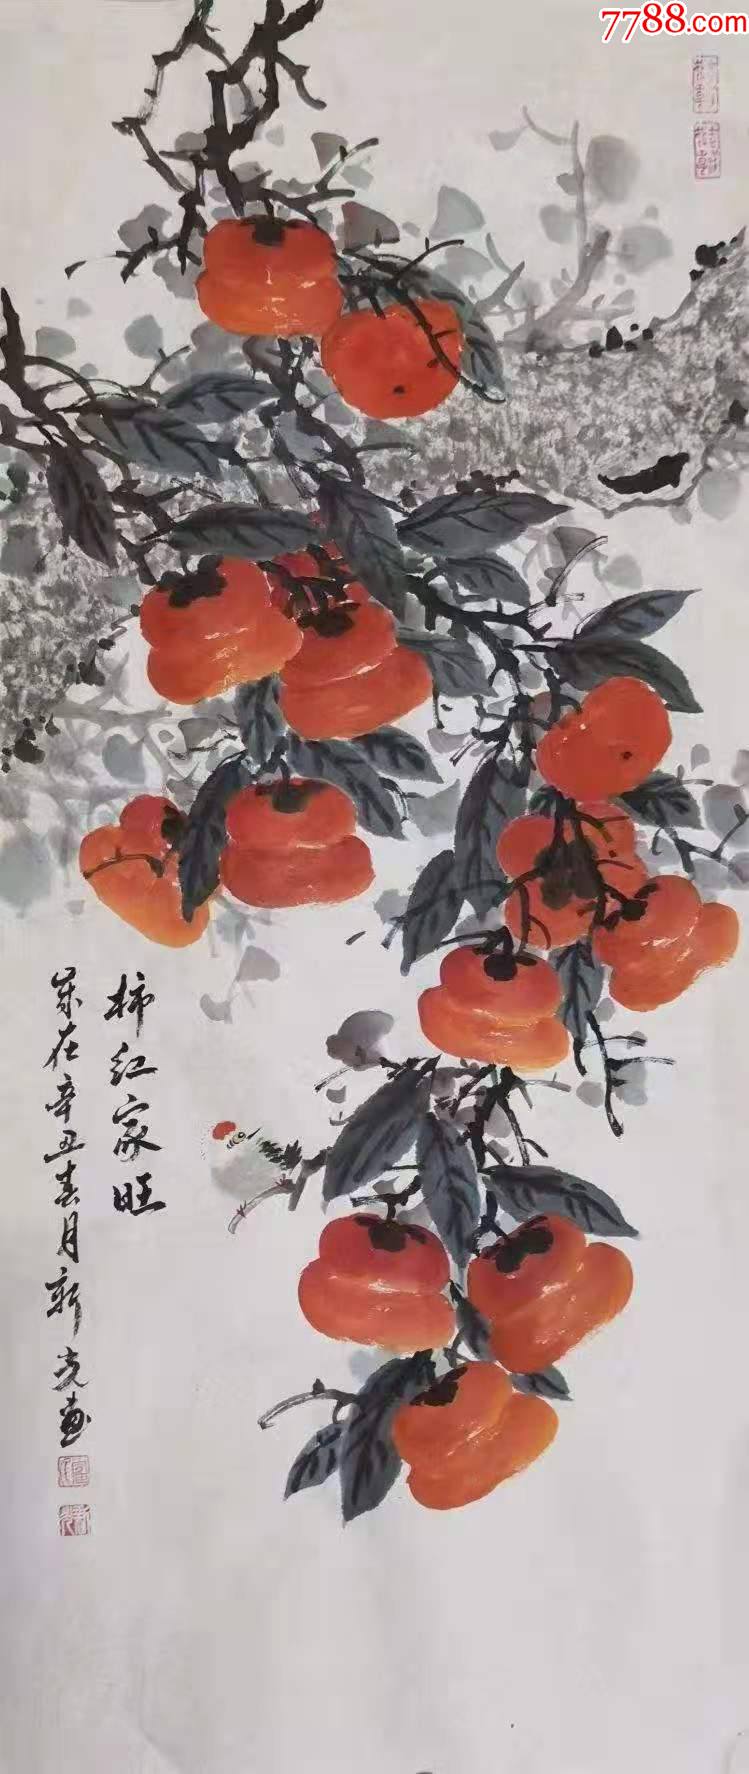 著名画家的柿子图图片